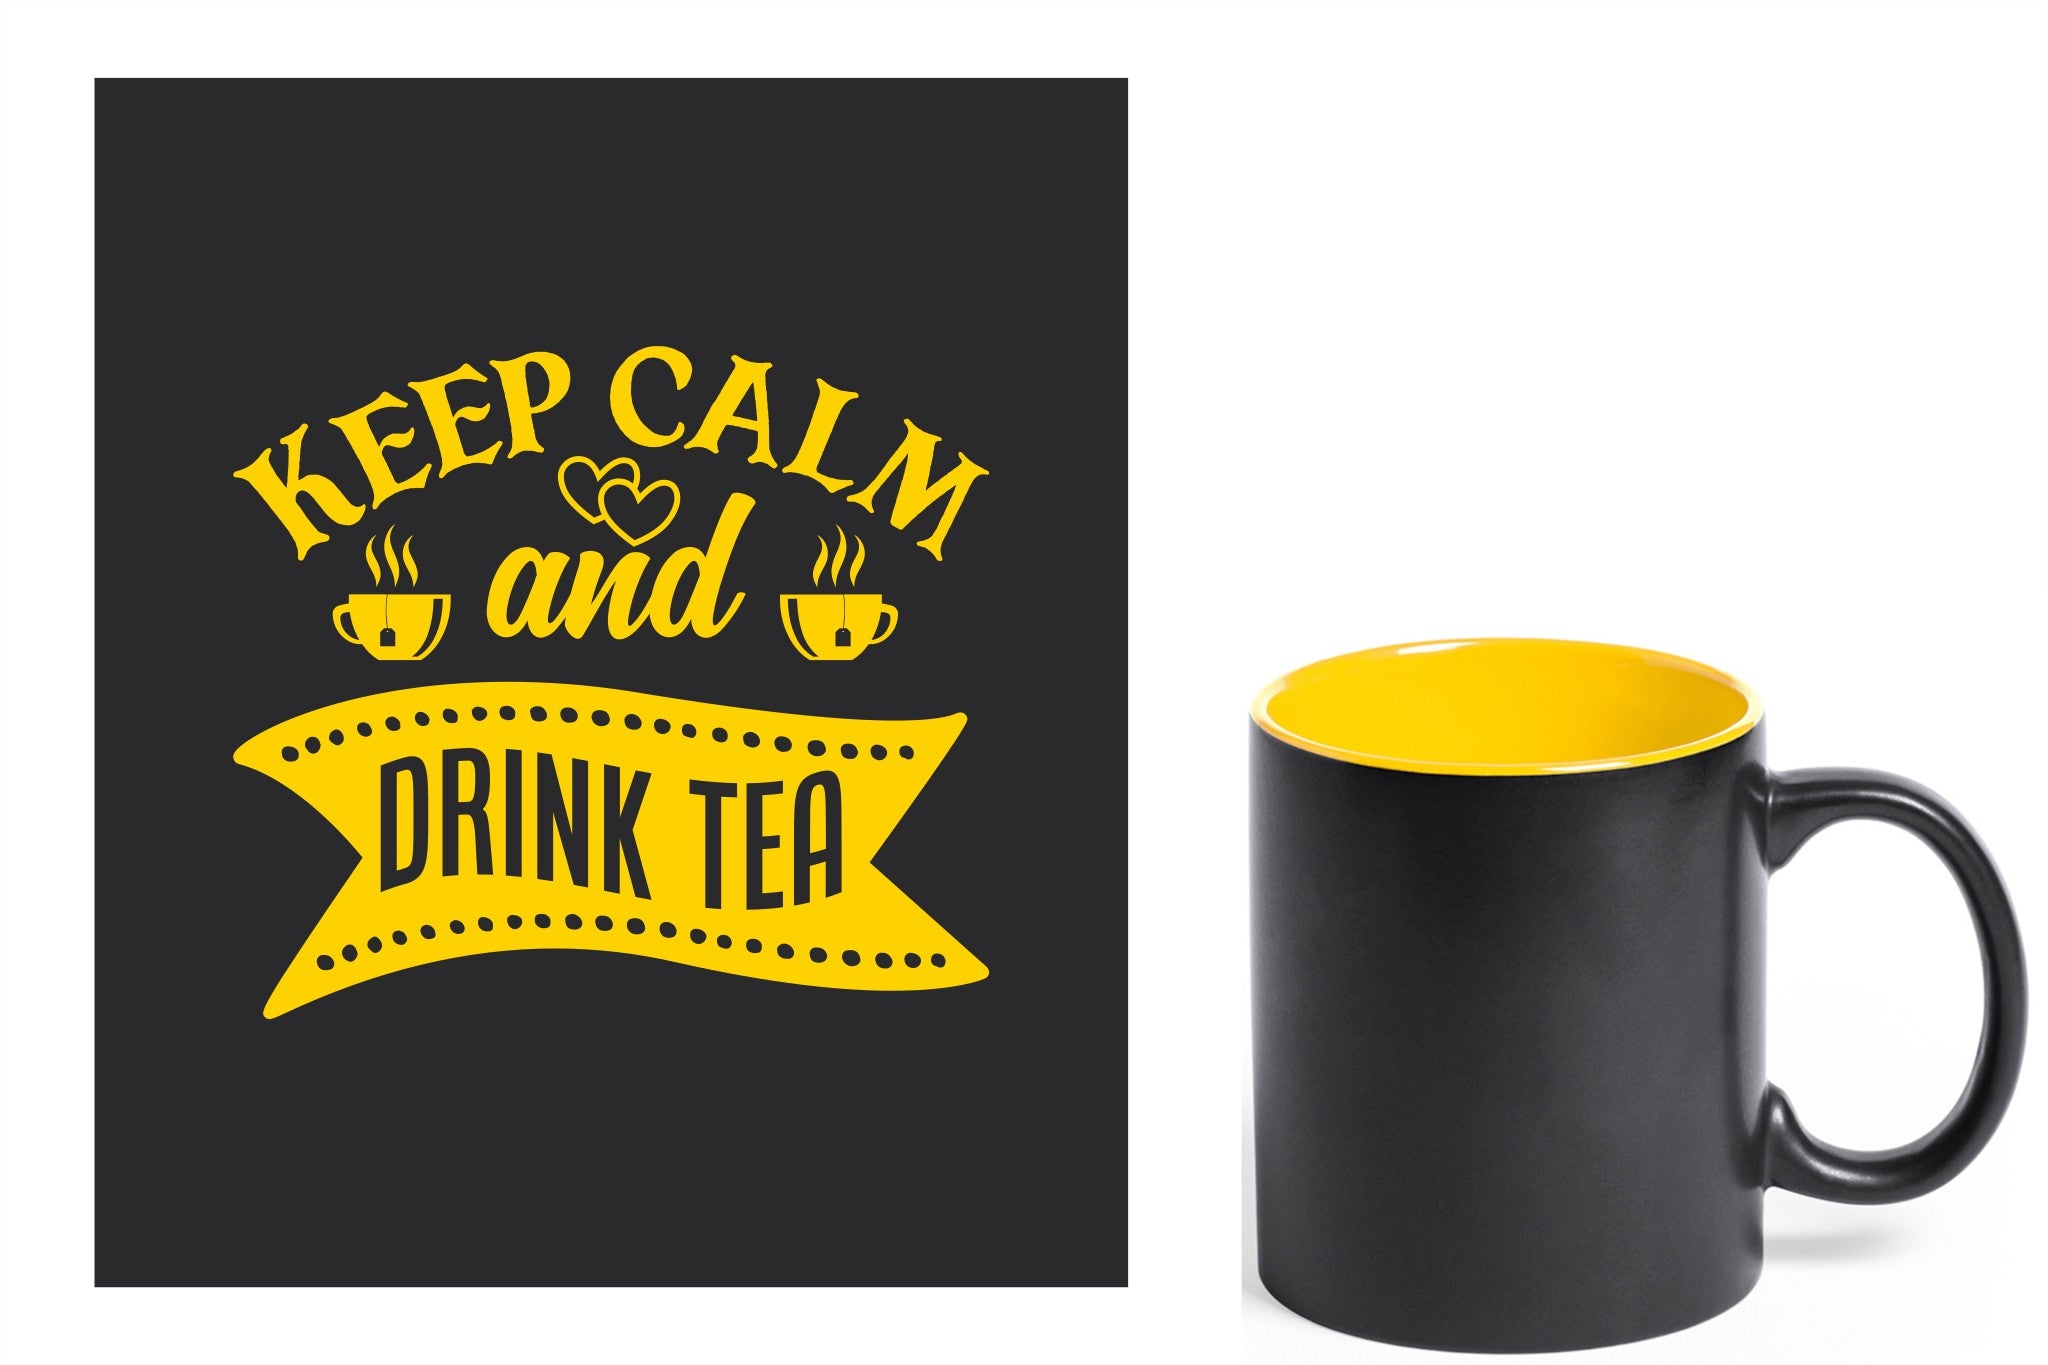 zwarte keramische mok met gele gravure  'Keep calm and drink tea'.